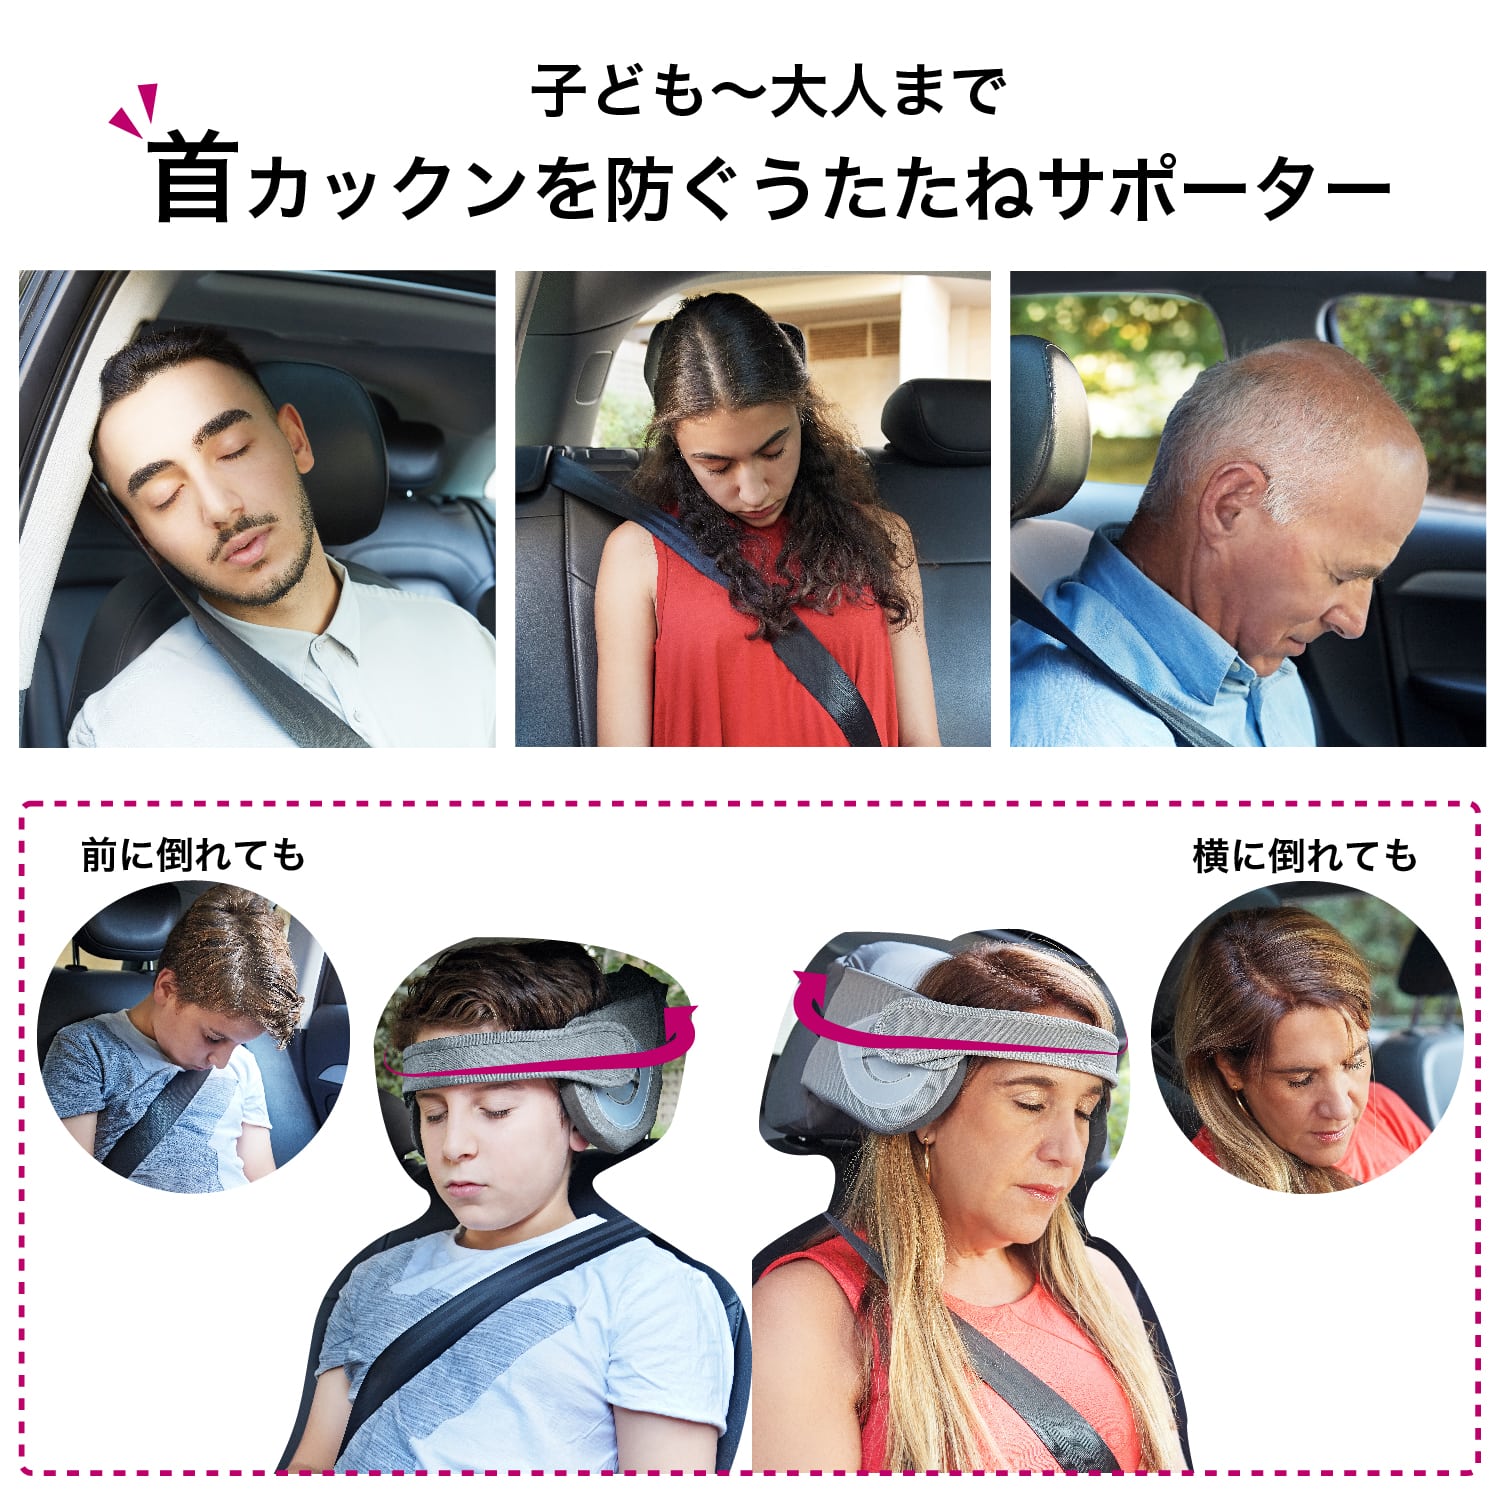 ドライブ中のうたたねの首カックンを防ぎます。 NapUp RIDE うたたねサポート